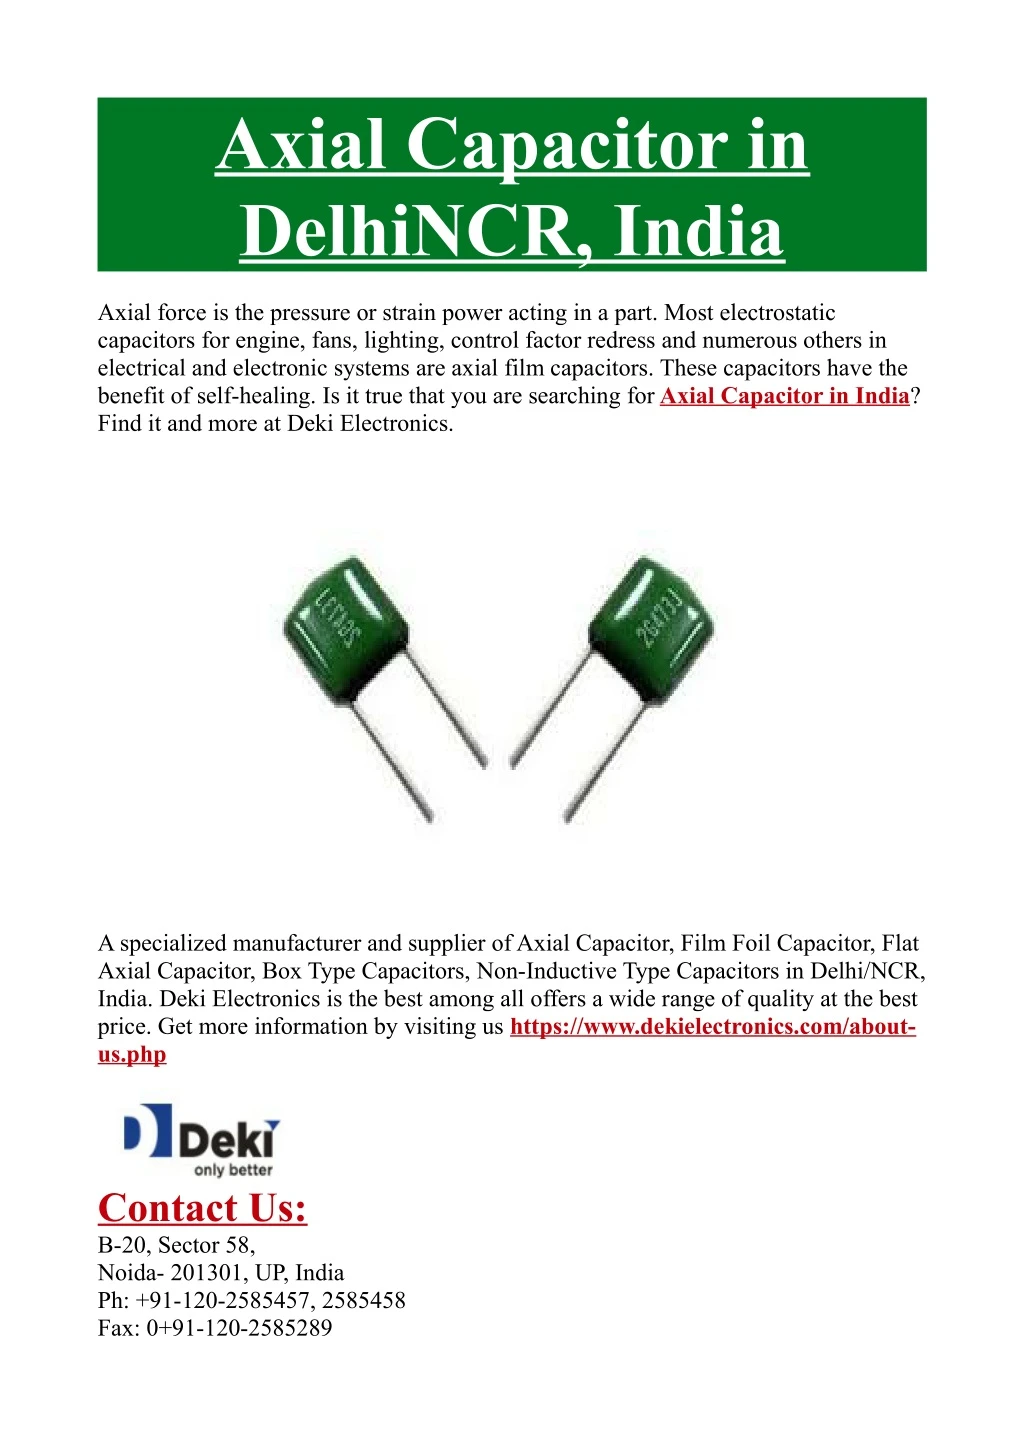 axial capacitor in delhincr india